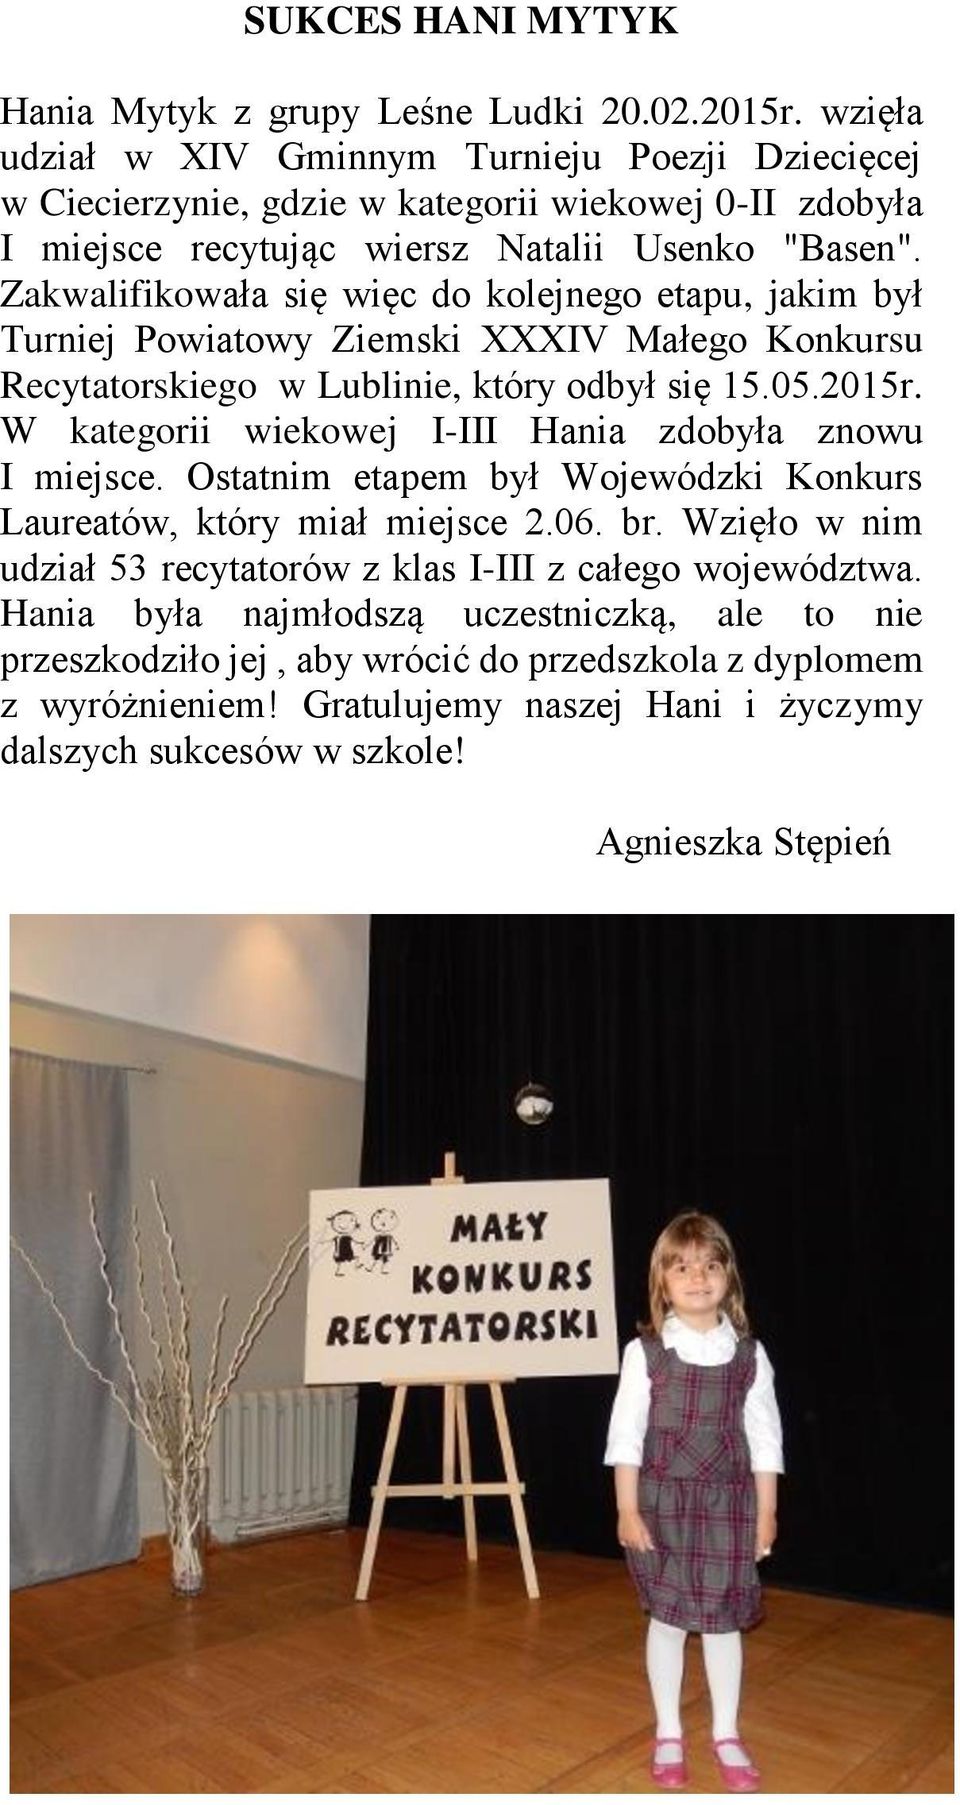 Zakwalifikowała się więc do kolejnego etapu, jakim był Turniej Powiatowy Ziemski XXXIV Małego Konkursu Recytatorskiego w Lublinie, który odbył się 15.05.2015r.